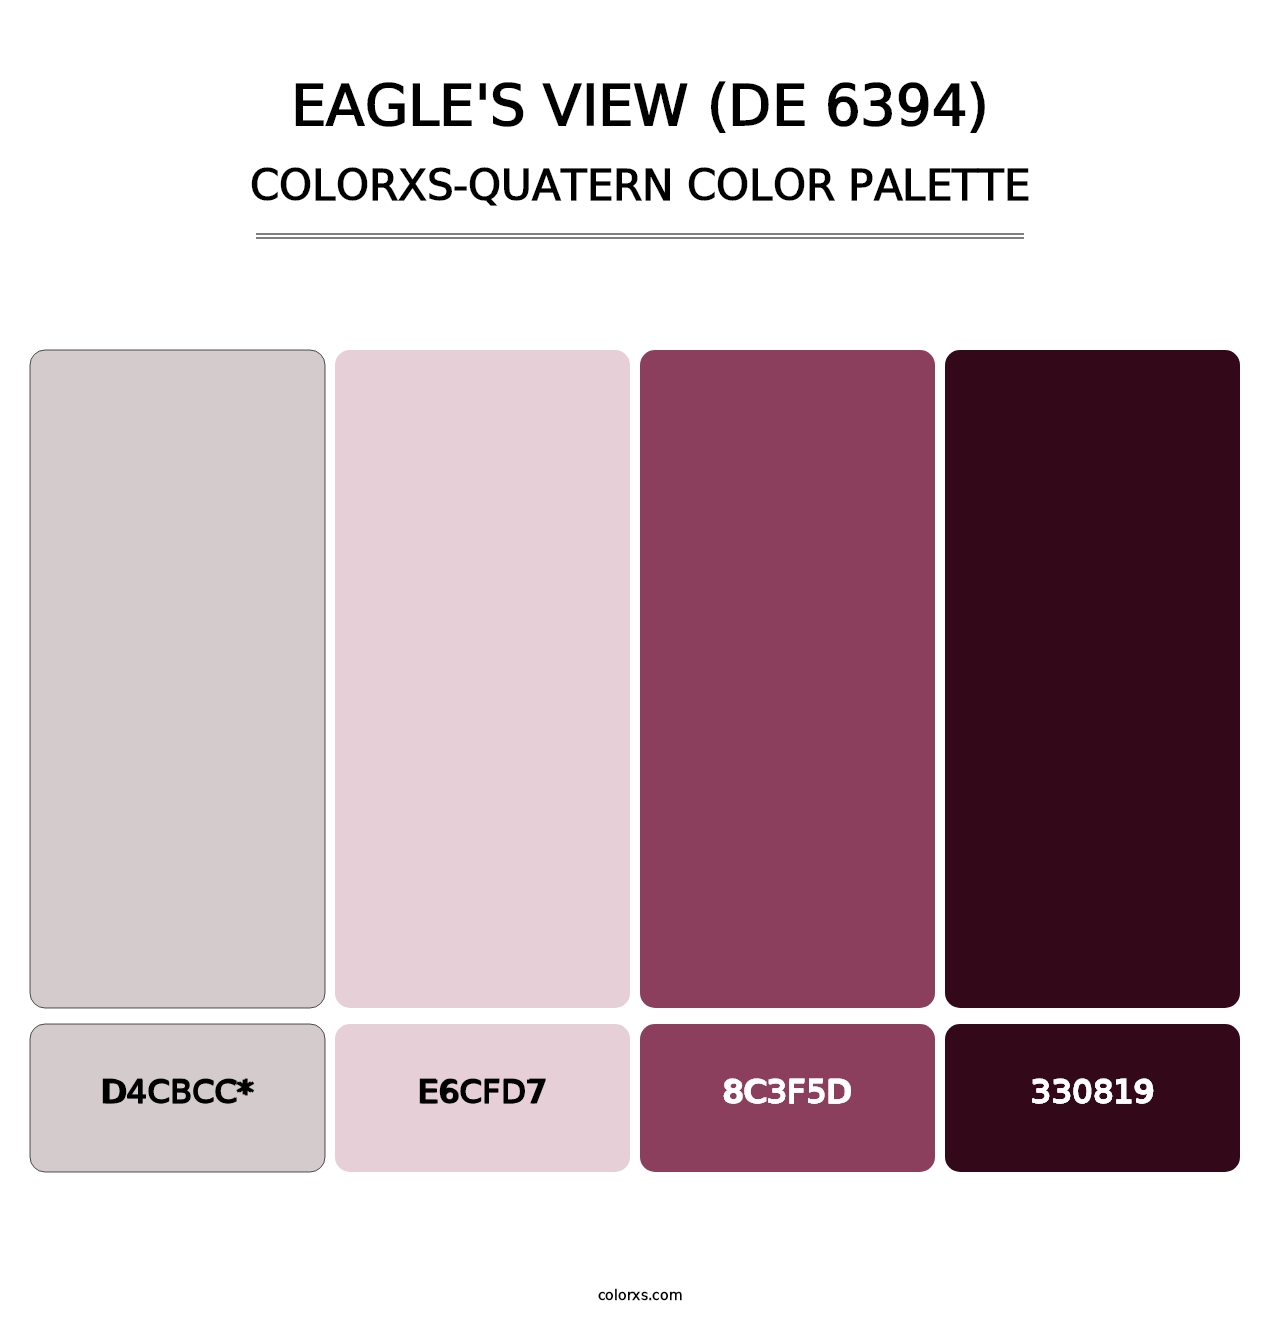 Eagle's View (DE 6394) - Colorxs Quatern Palette